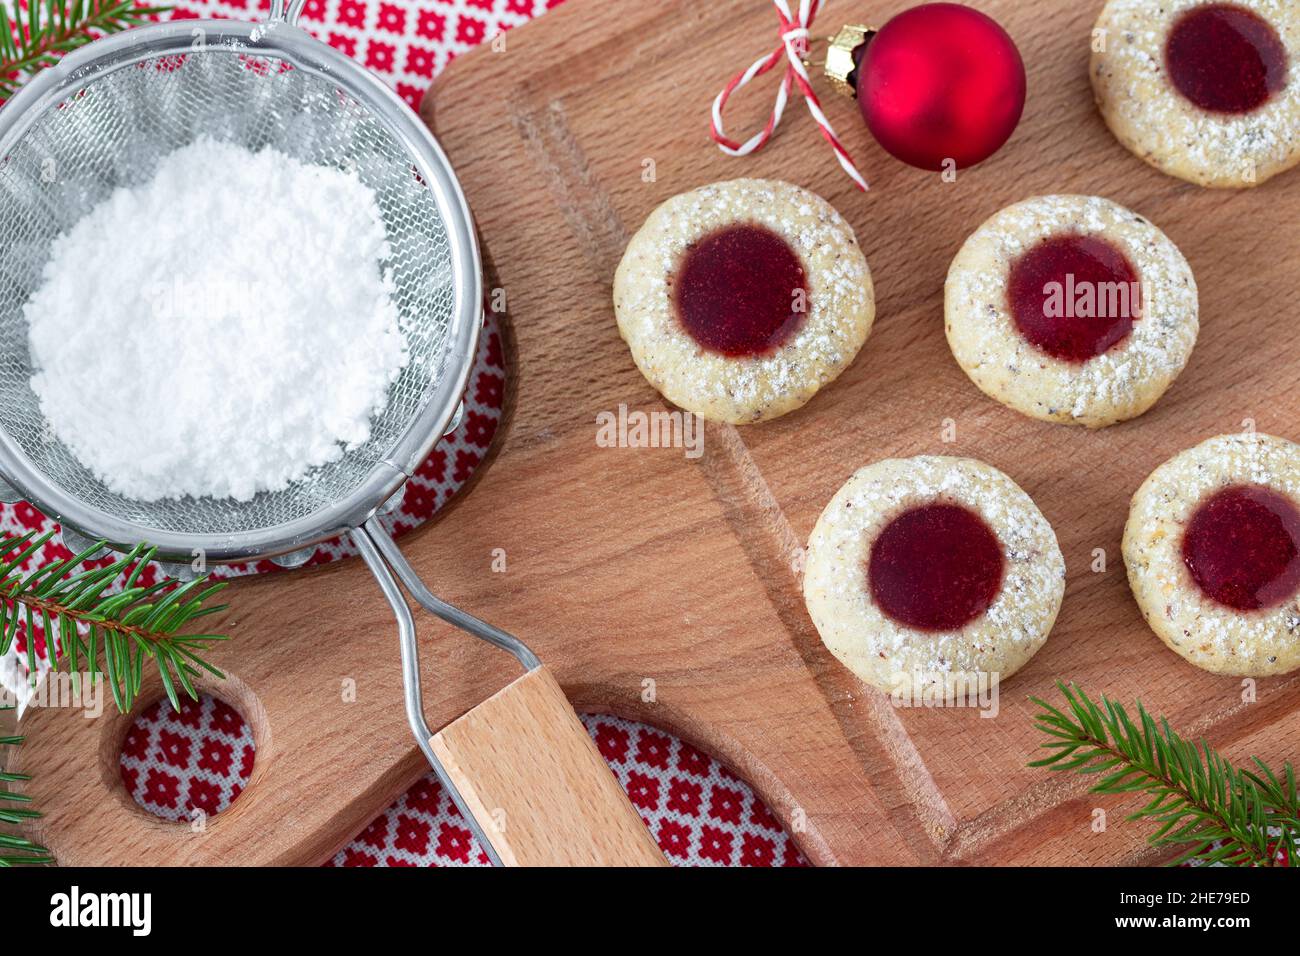 christmas biscuits Husarenkrapfen on wooden board Stock Photo